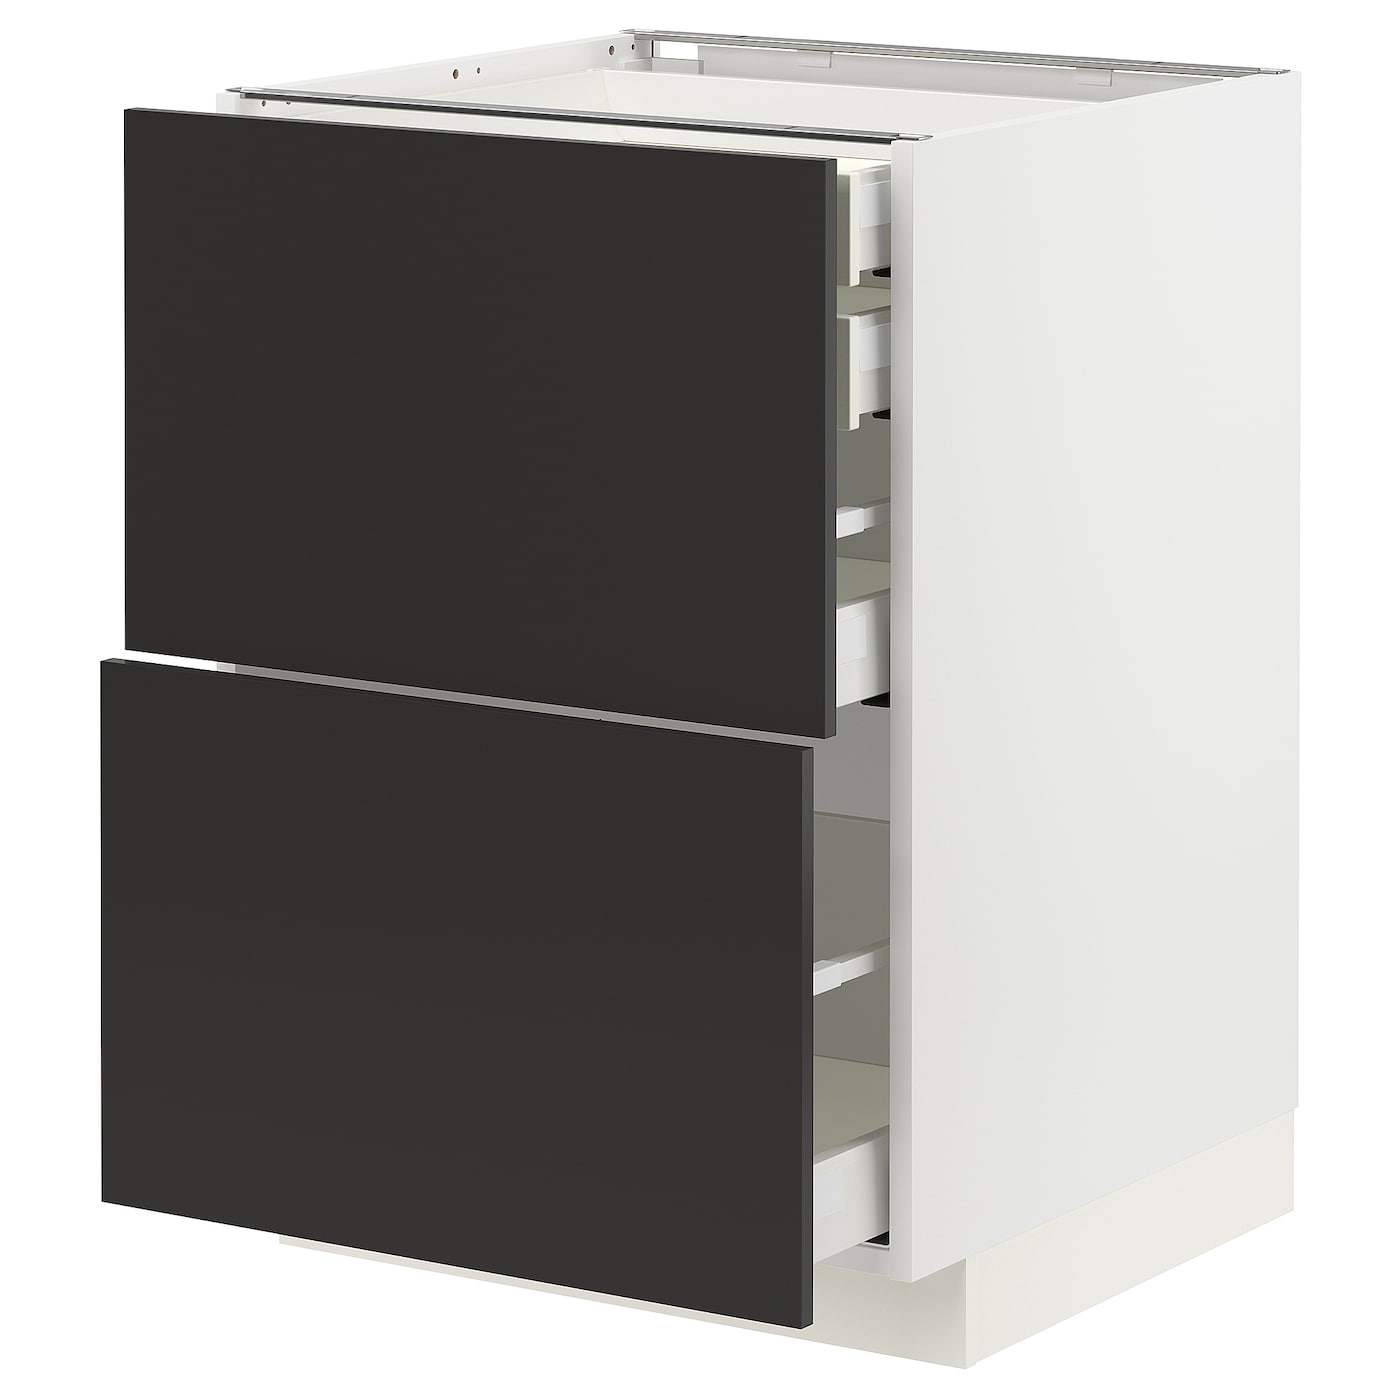 Напольный кухонный шкаф  - IKEA METOD MAXIMERA, 88x61,6x60см, белый/черный, МЕТОД МАКСИМЕРА ИКЕА